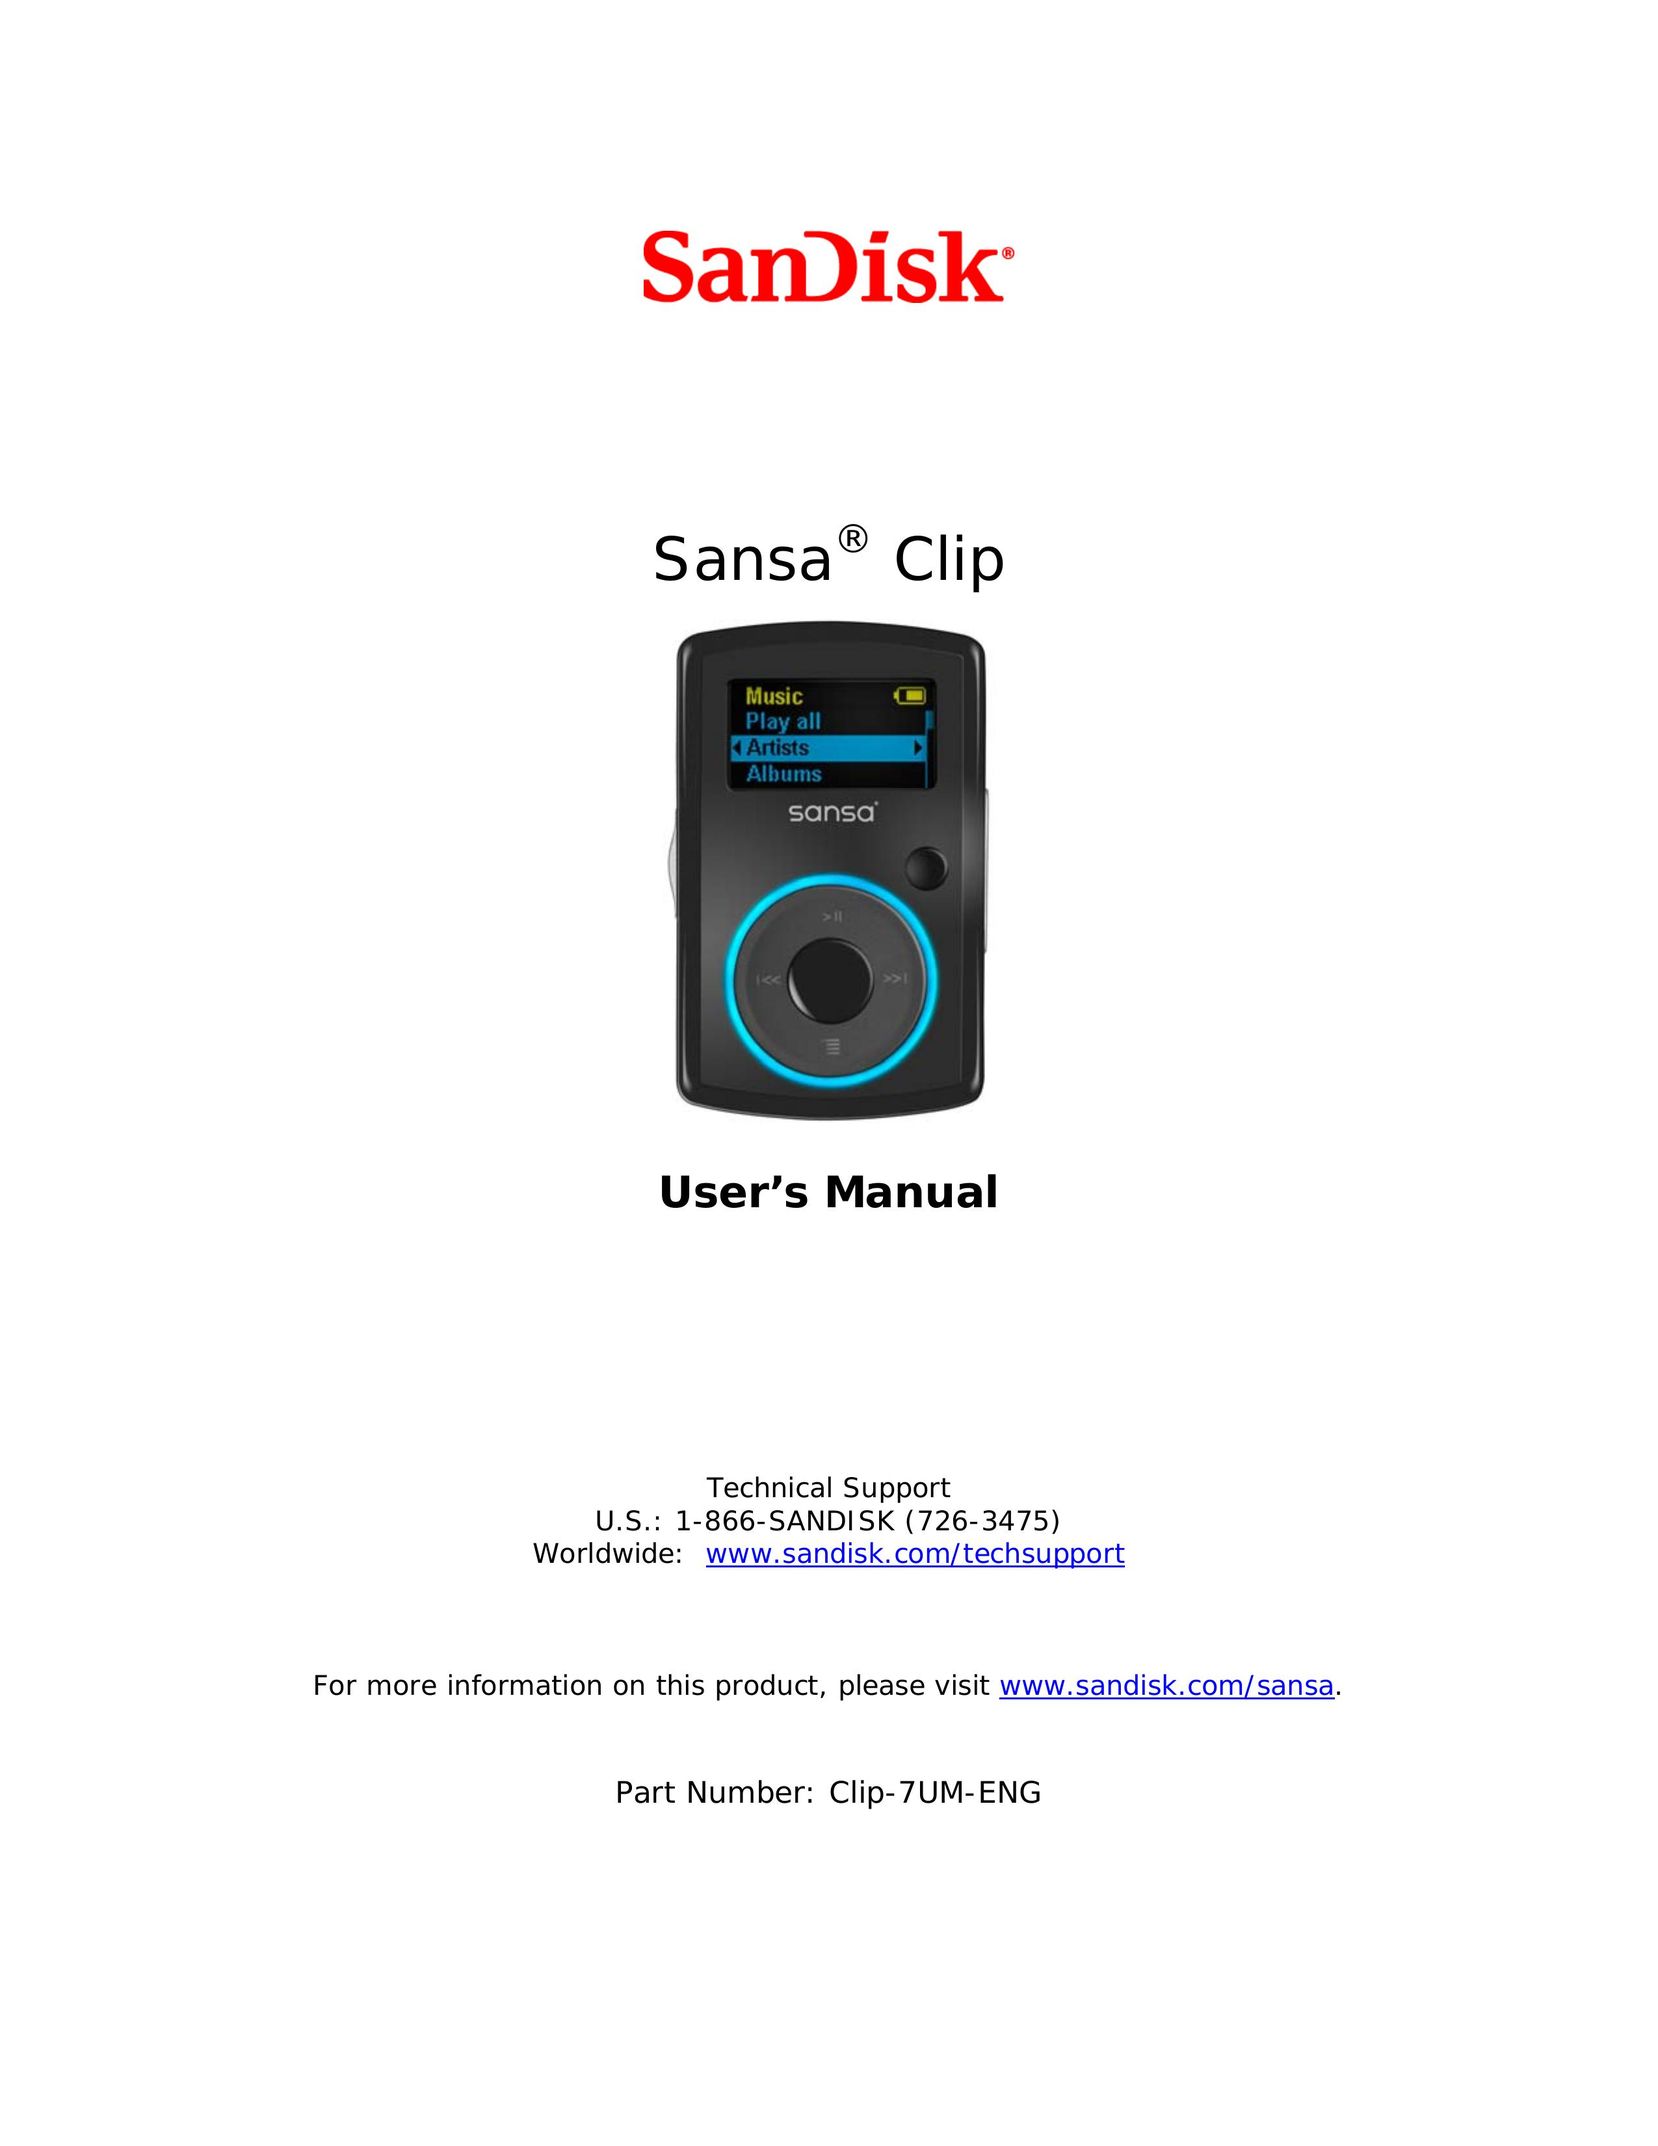 SanDisk Clip-7UM-ENG MP3 Player User Manual